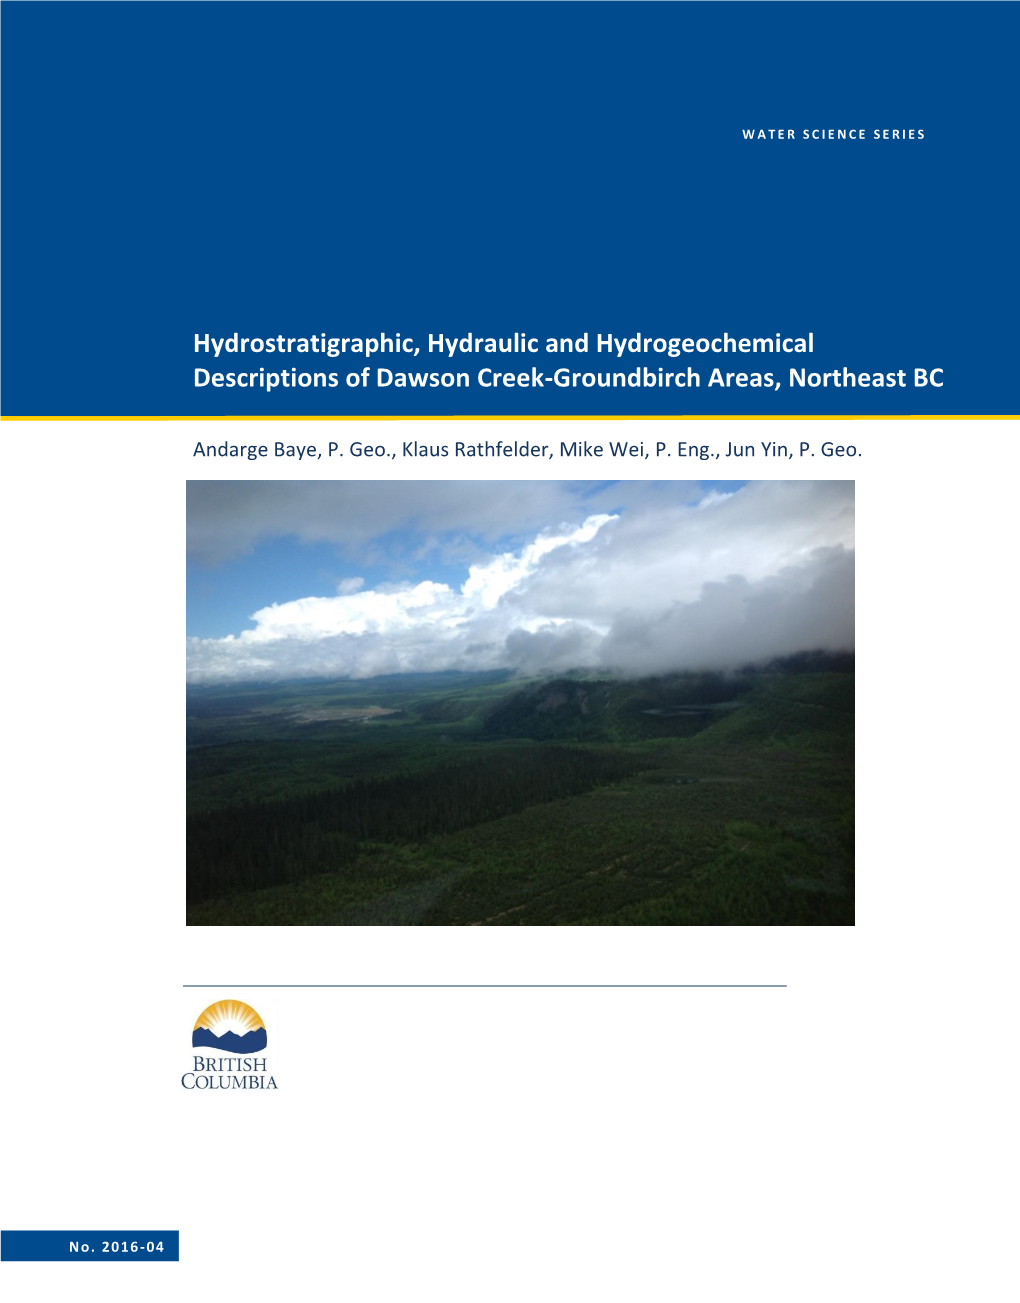 Hydrostratigraphic, Hydraulic and Hydrogeochemical Descriptions of Dawson Creek-Groundbirch Areas, Northeast BC